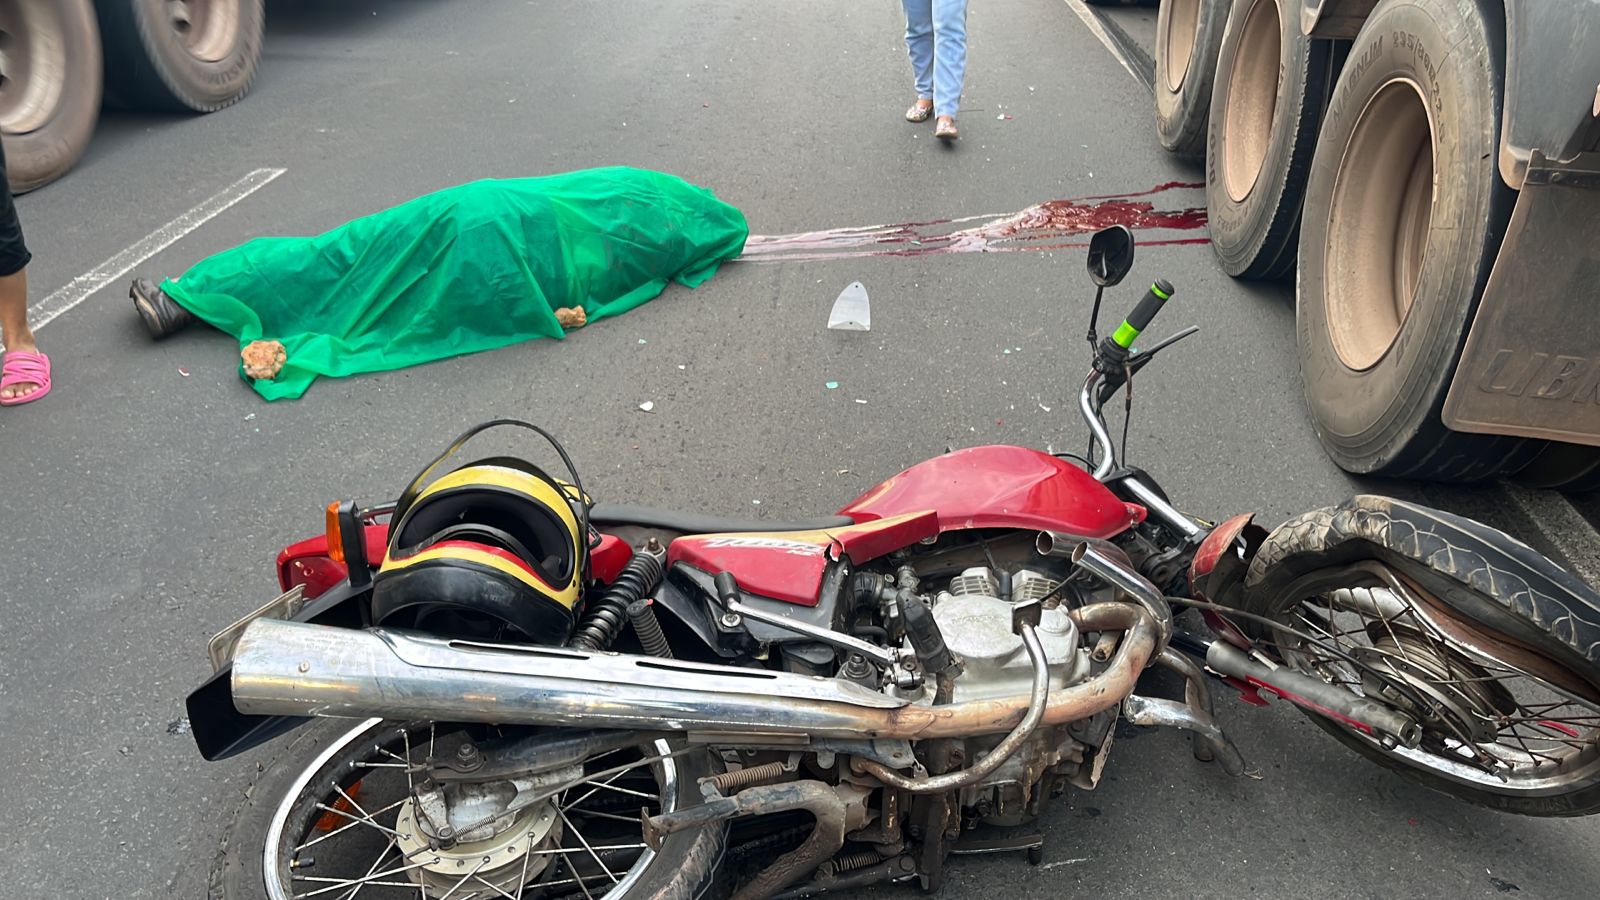 Mototaxista morre após ser atropelado por carreta na BR-316 em Teresina - Imagem 1